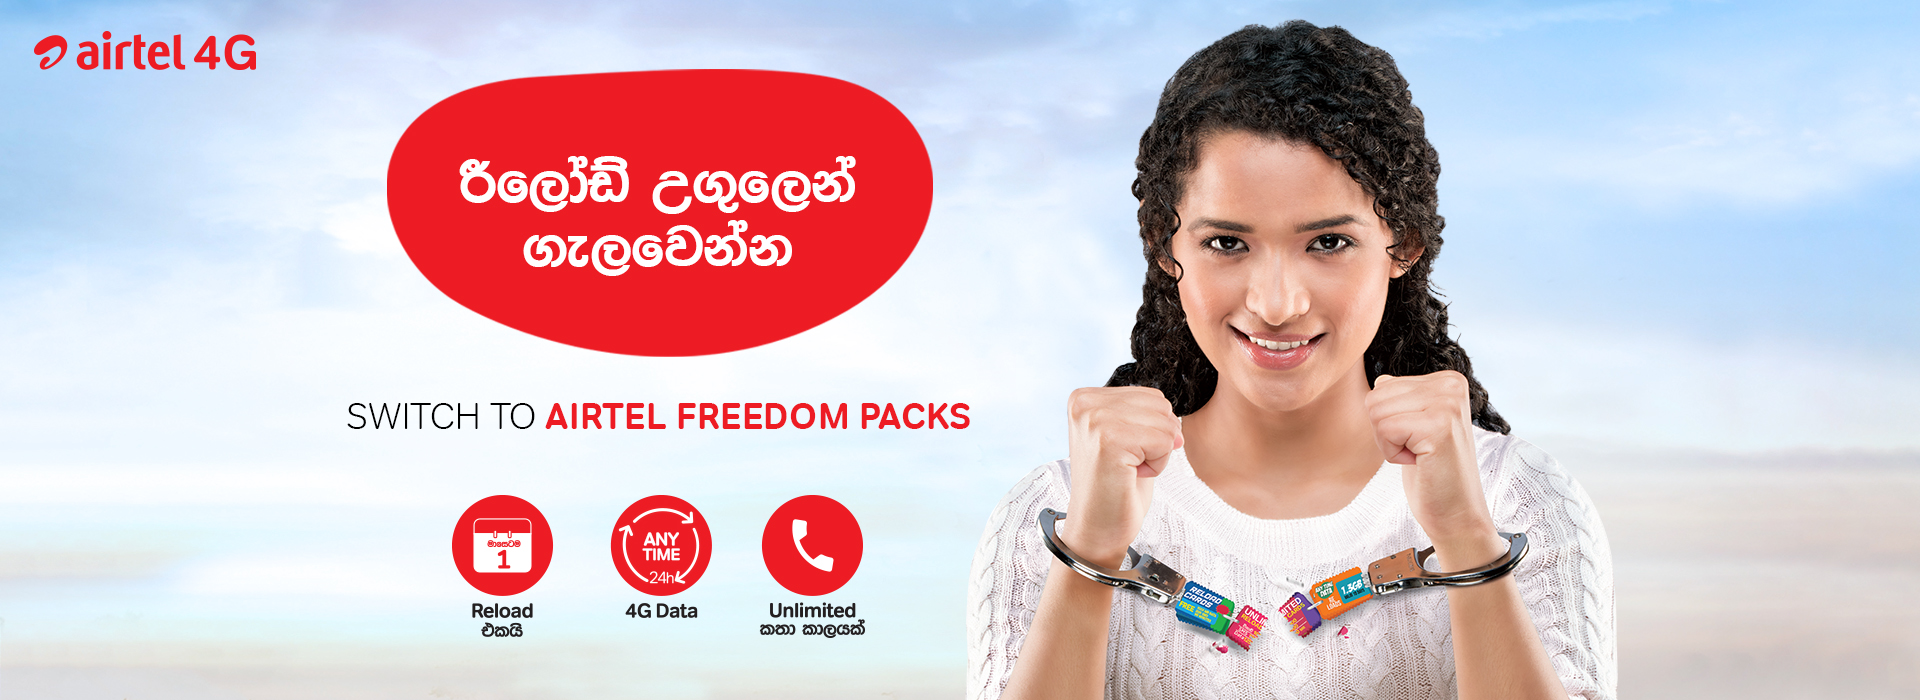 airtel freedom 900 package buy online 